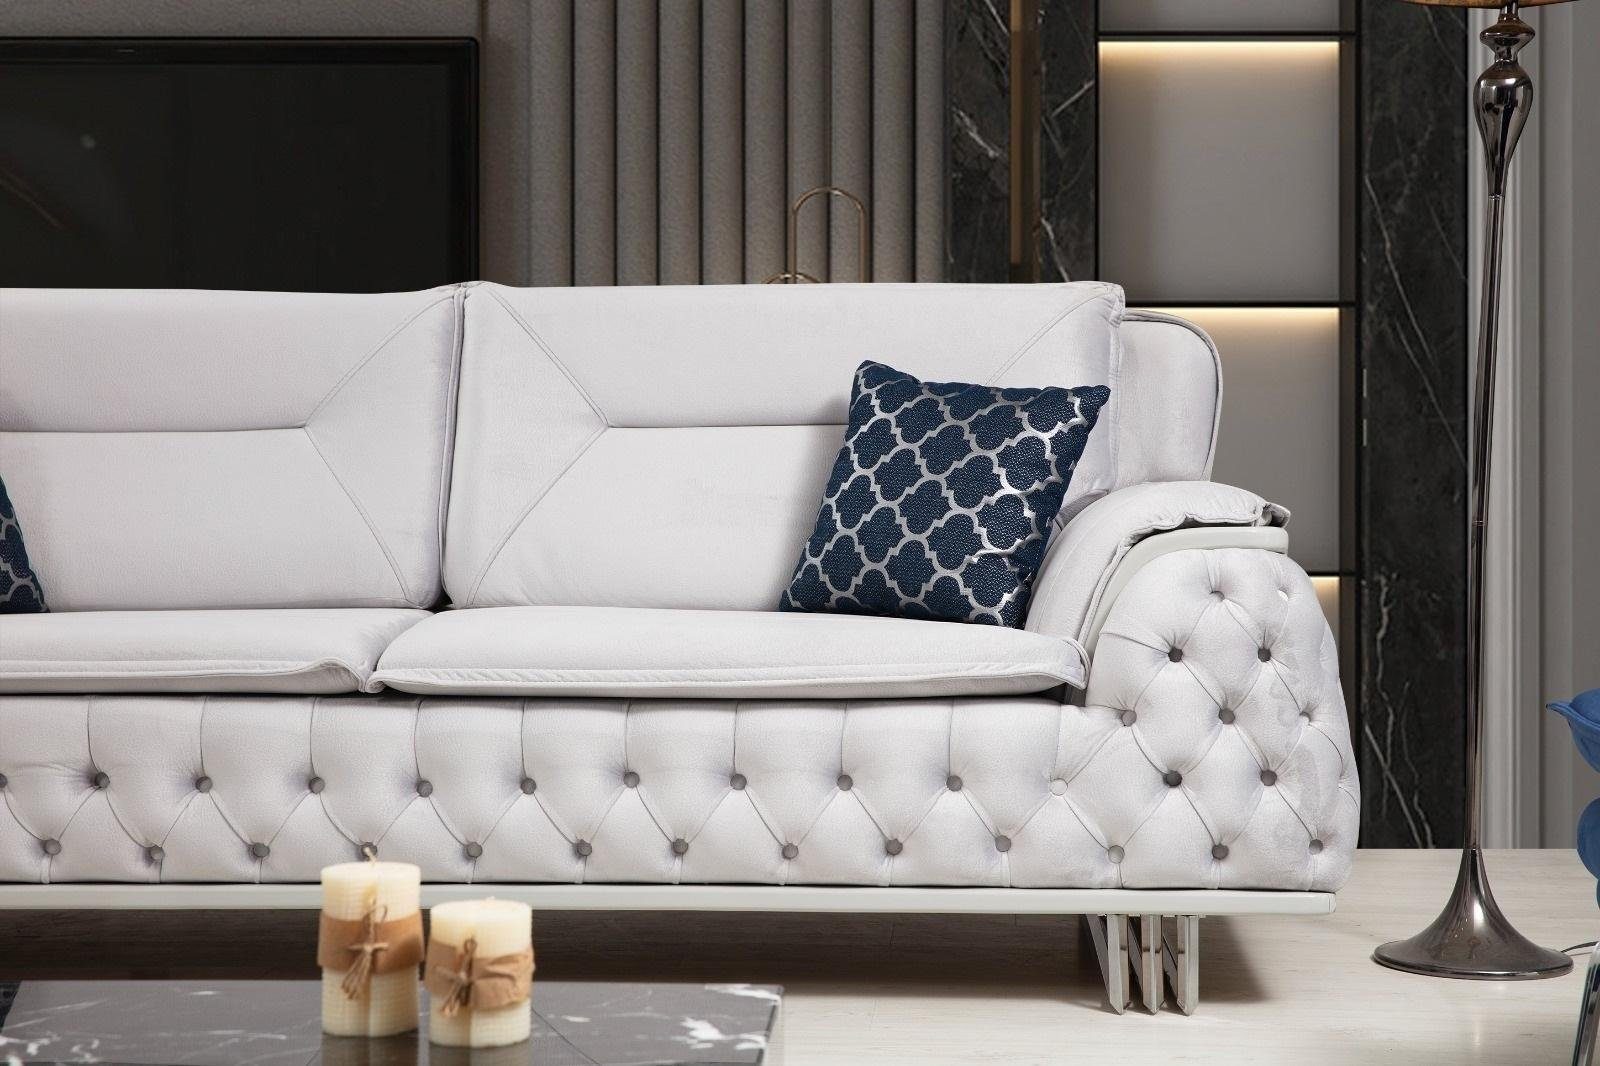 Sofa JVmoebel Textil Couch Möbel Chesterfield-Sofa Design Chesterfield Couchen Dreisitzer 240cm